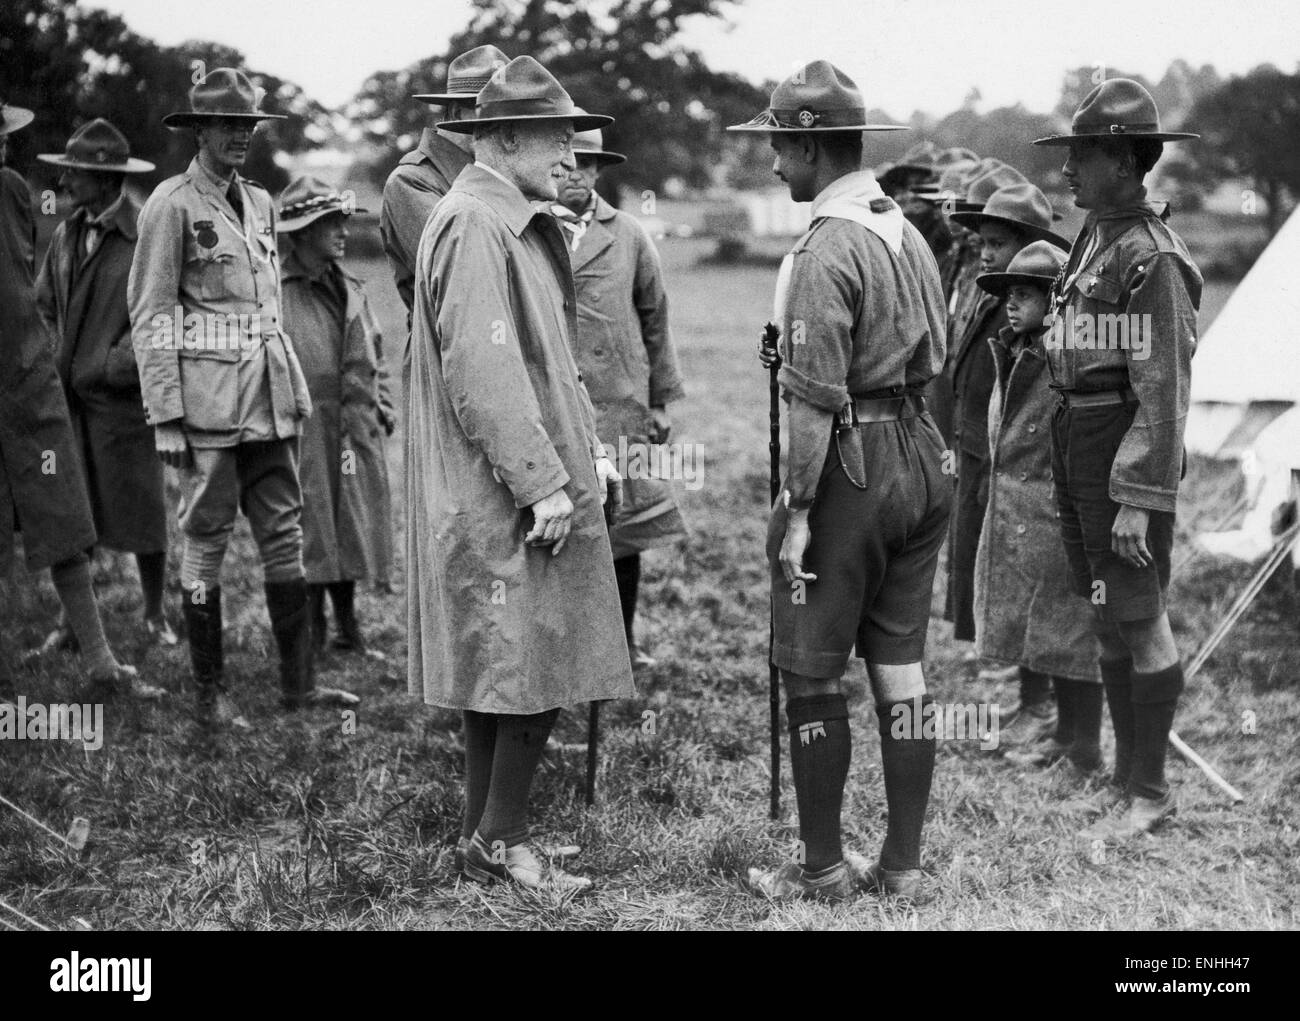 Lord Robert Baden-Powell, fondateur du Mouvement Scout, photographiée avec Sir Alfred Pickford le Commissaire pour les Scouts d'outre-mer, à discuter avec Parsee boy scouts à Wembley où ils sont en camp. 25 juillet 1929. Banque D'Images